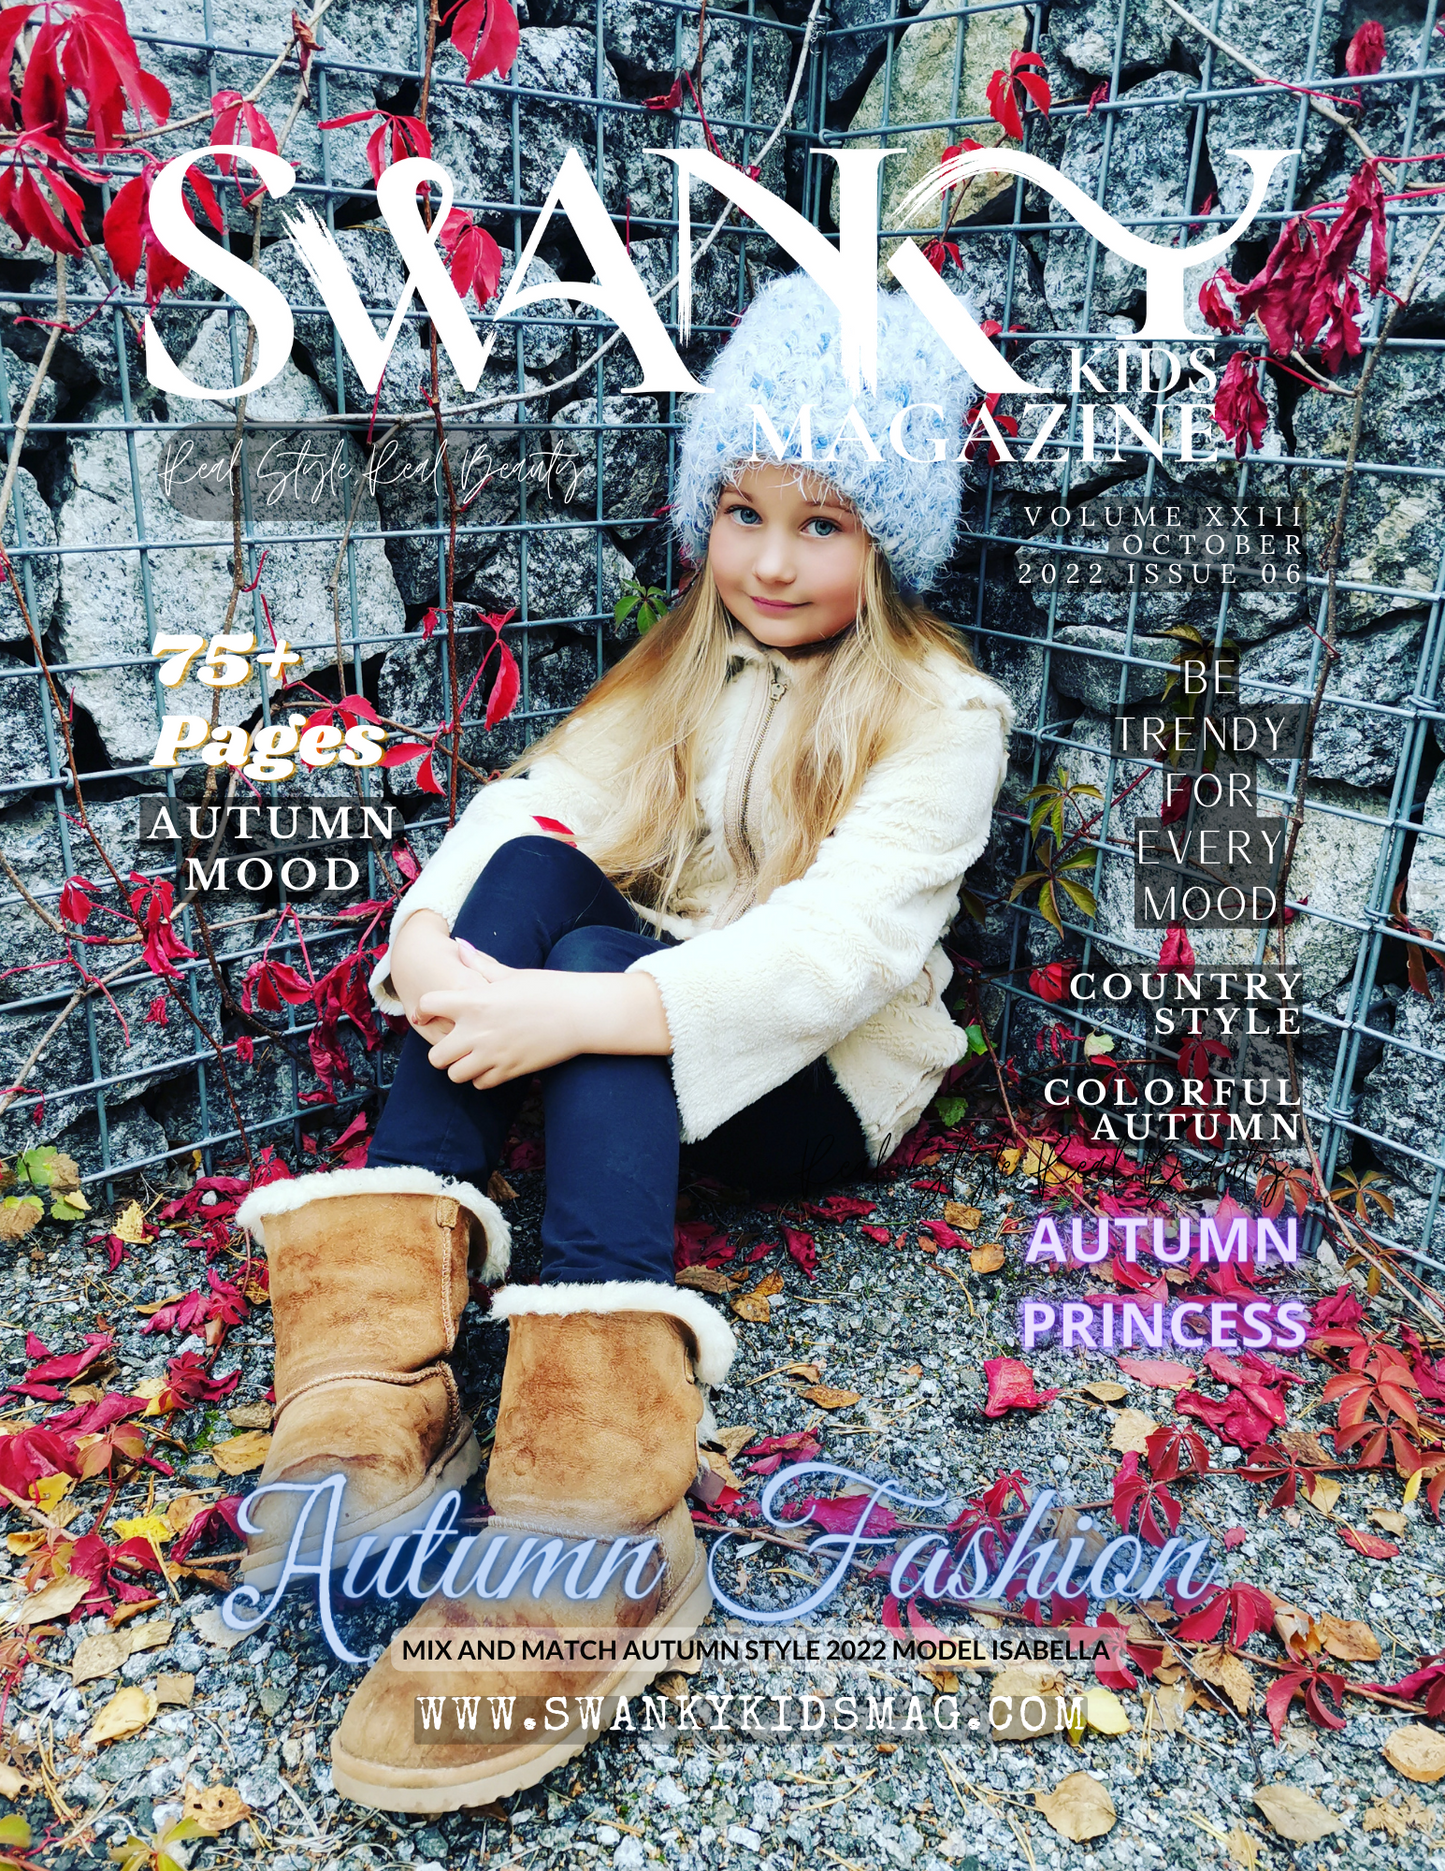 Swanky Kids Magazine October 2022 VOL XXIII Issue 06